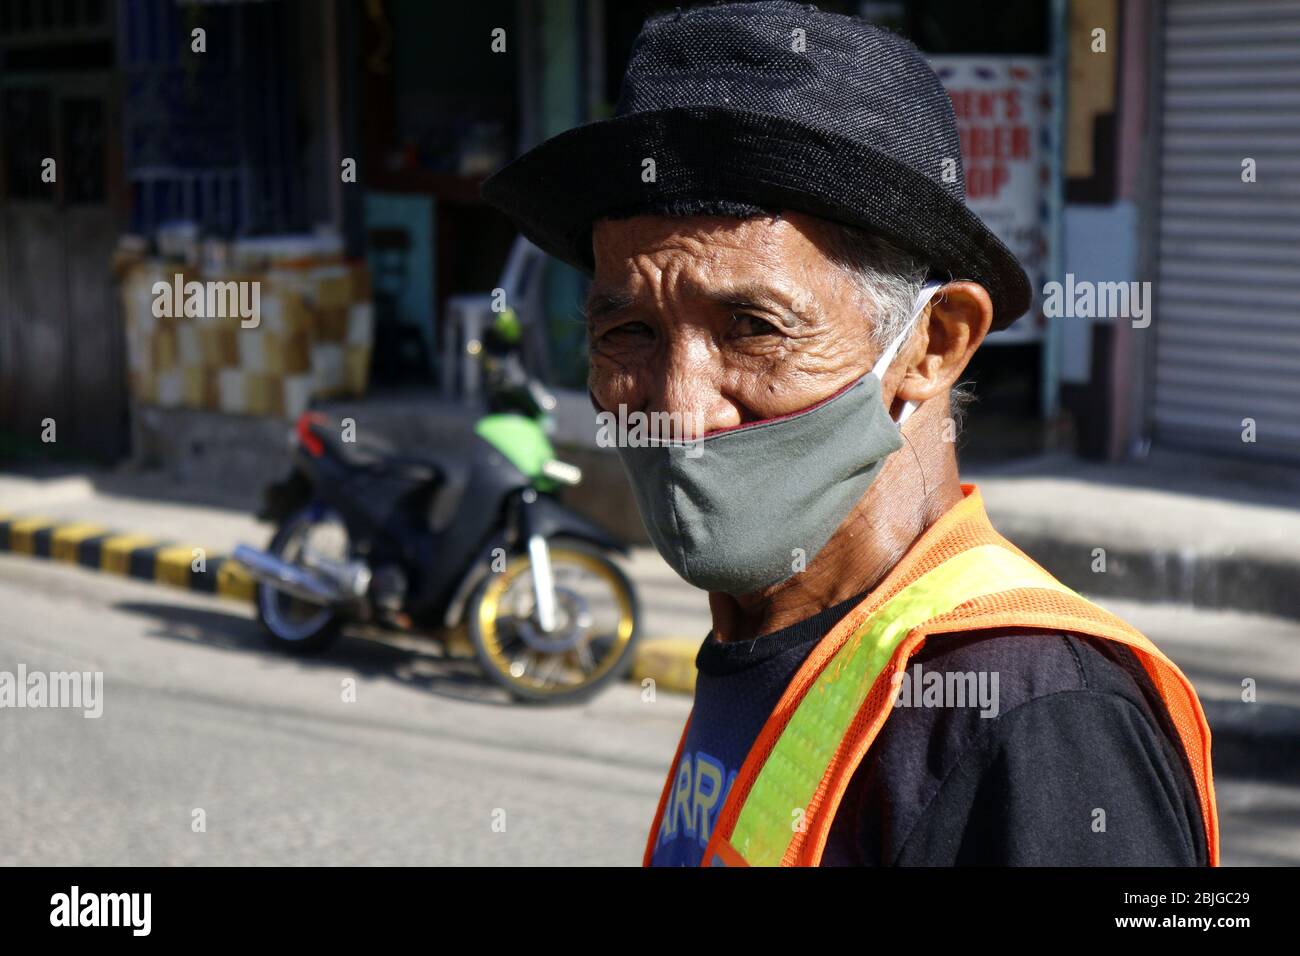 Antipolo City, Philippines - 28 avril 2020: Homme philippin adulte portant un tissu ou un masque de visage lavable et un chapeau comme protection pendant le virus Covid 19 Banque D'Images